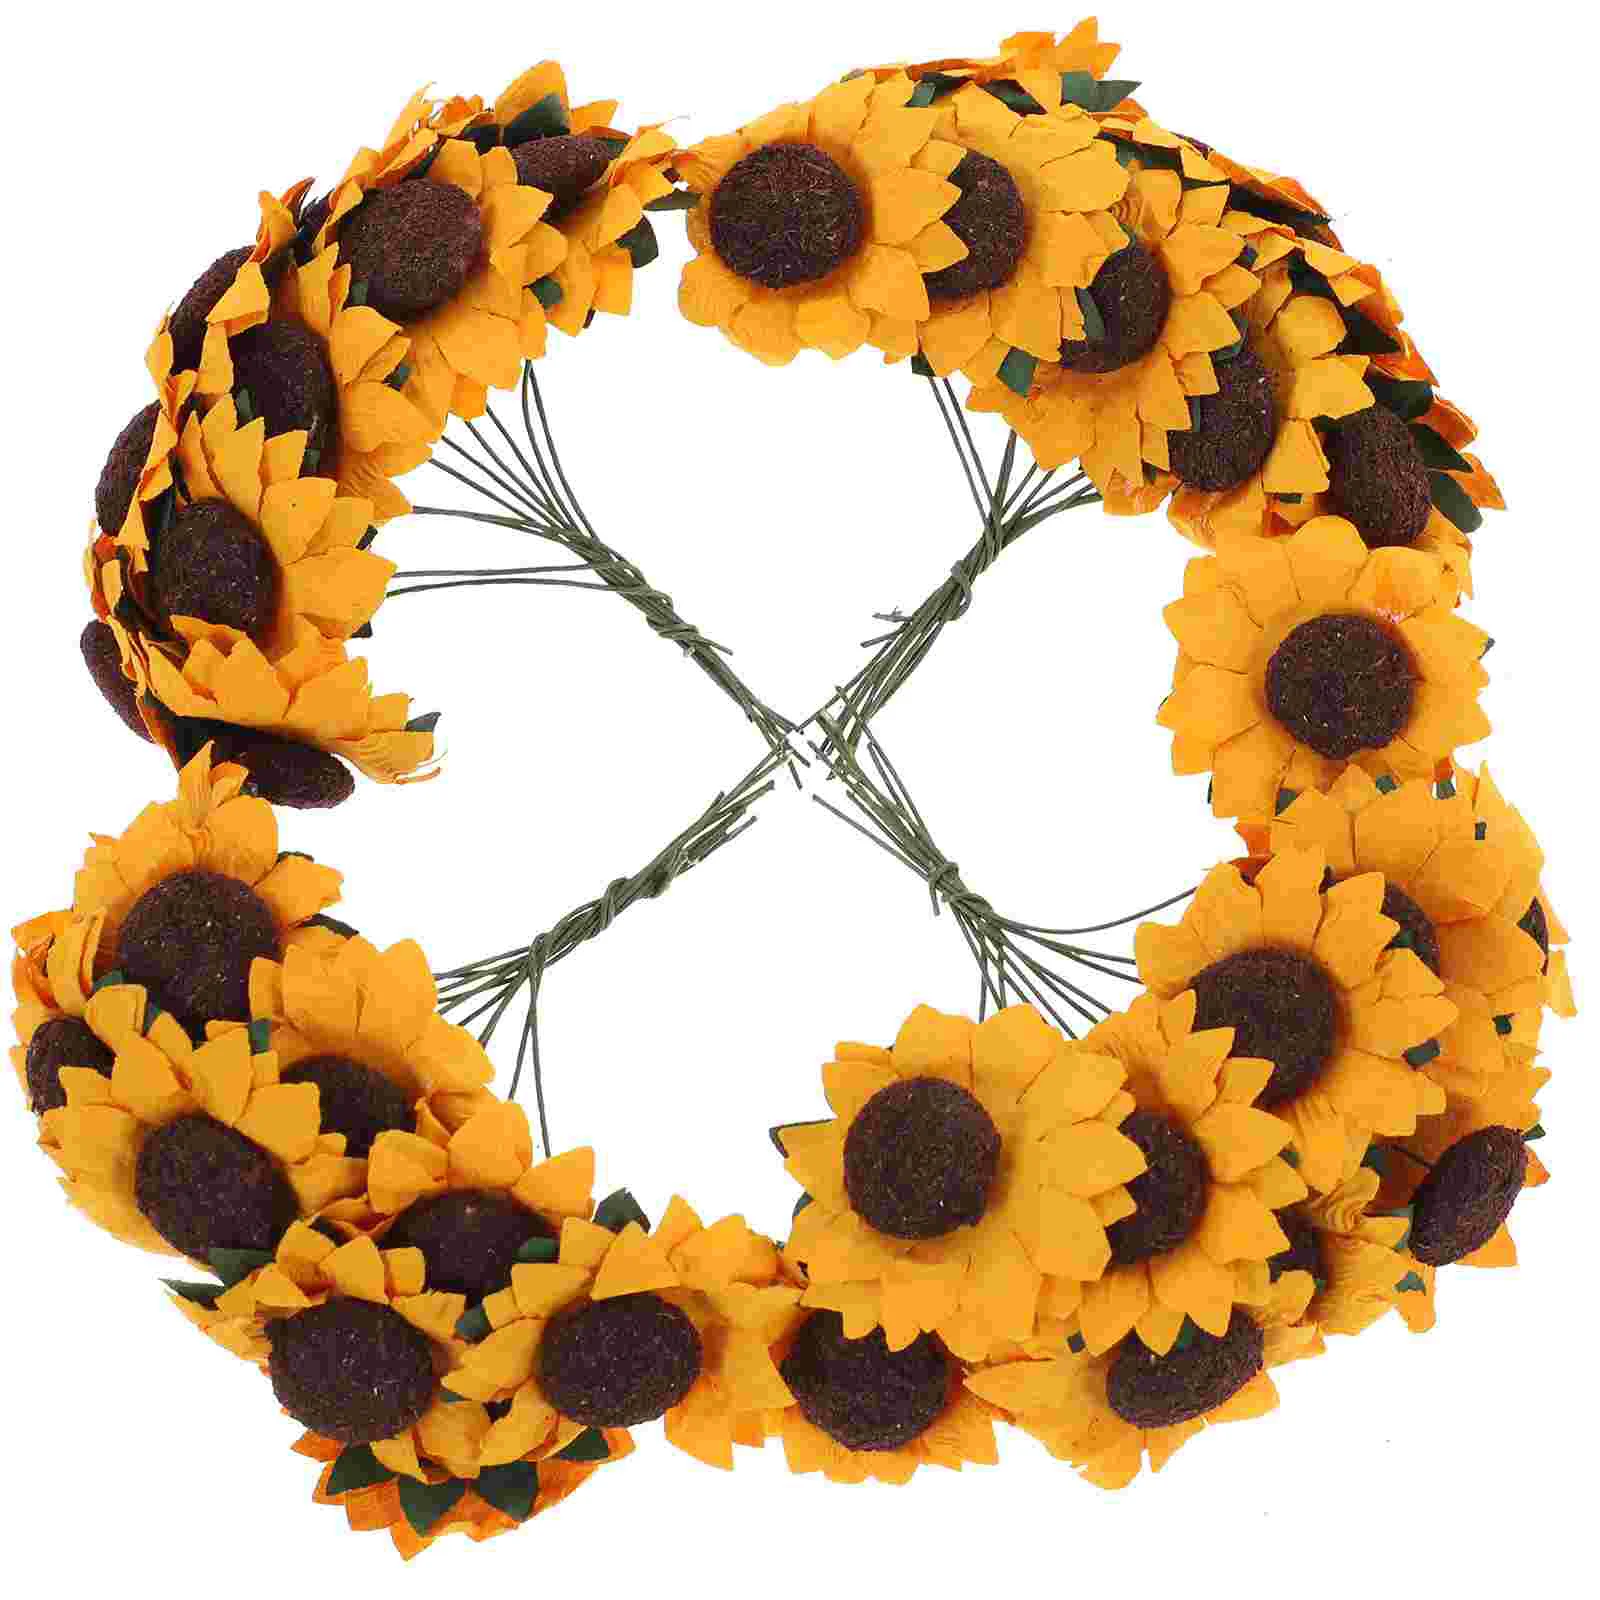 

Mini Artificial Paper Sunflower Wedding Decor Craft Fake Flower DIY Bouquets Centerpieces Arrangements Party Home Decor